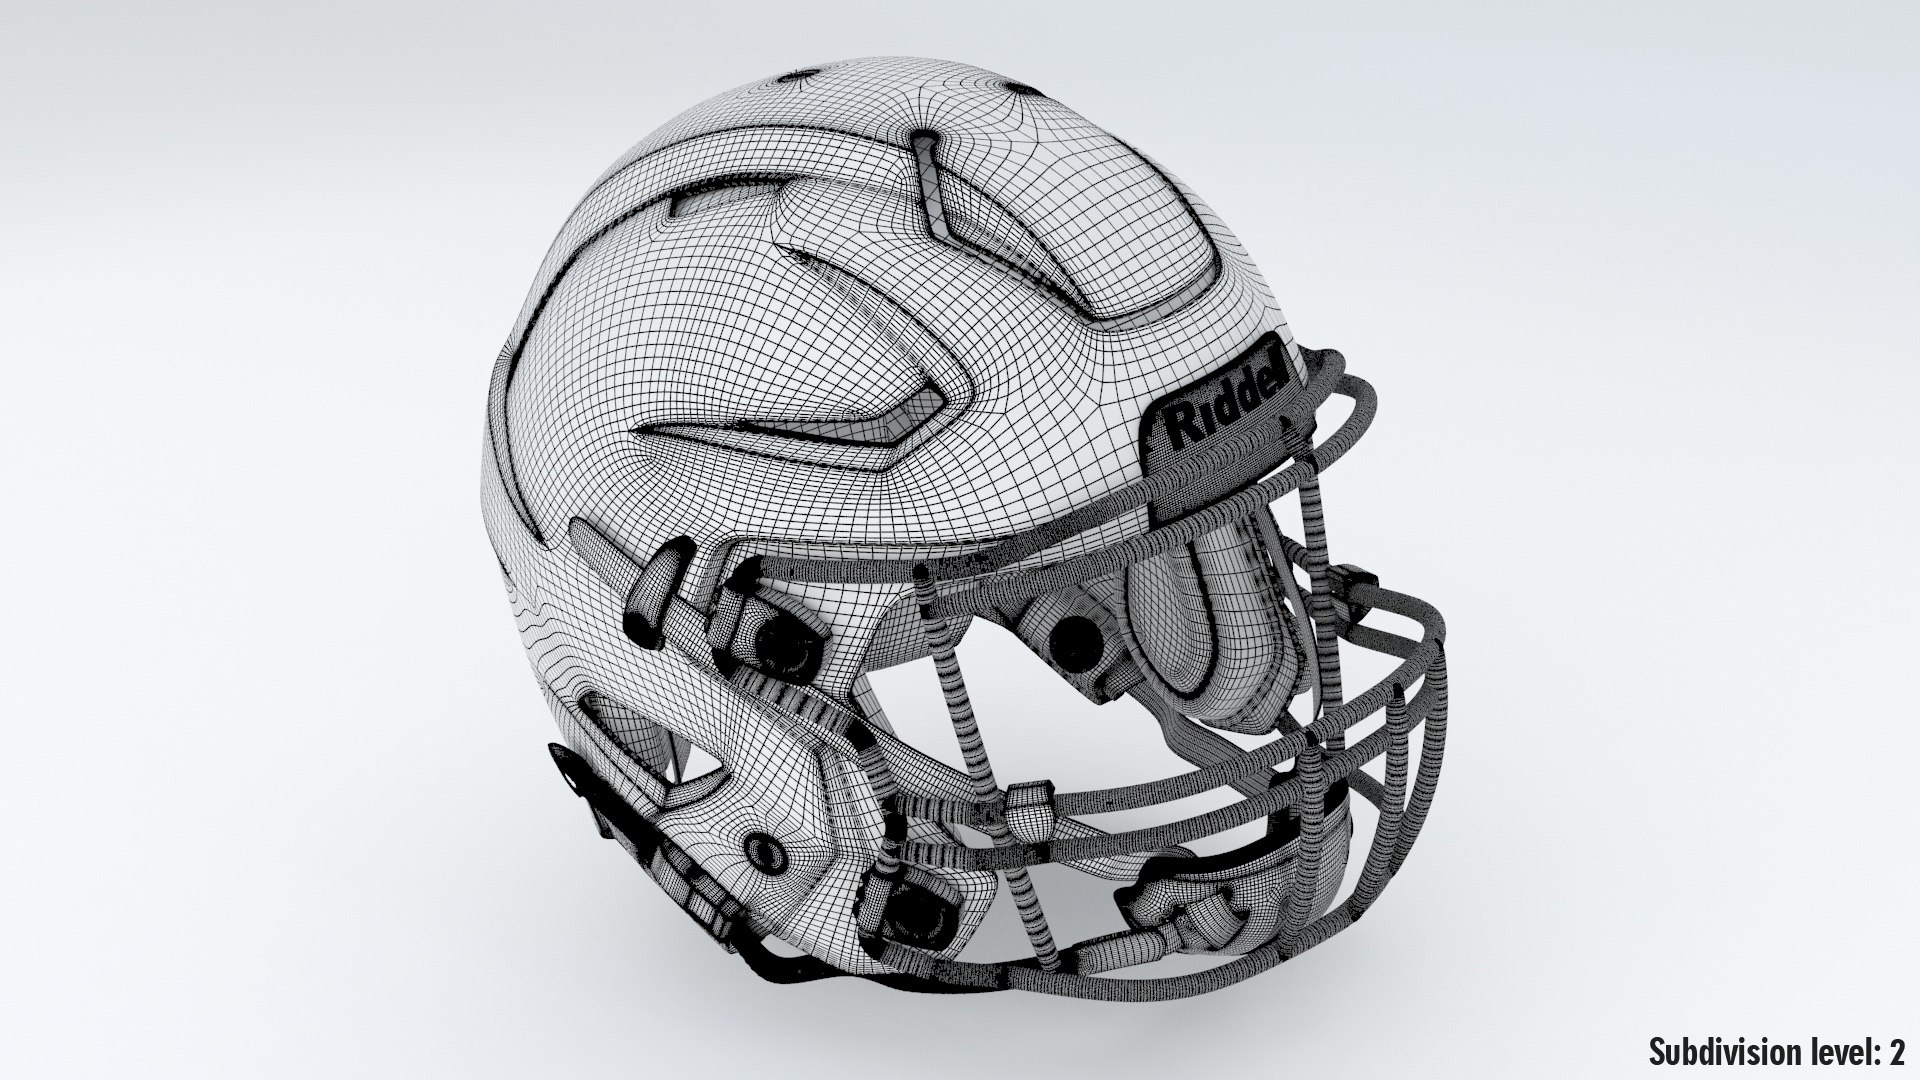 ArtStation - Riddell Speedflex helmet